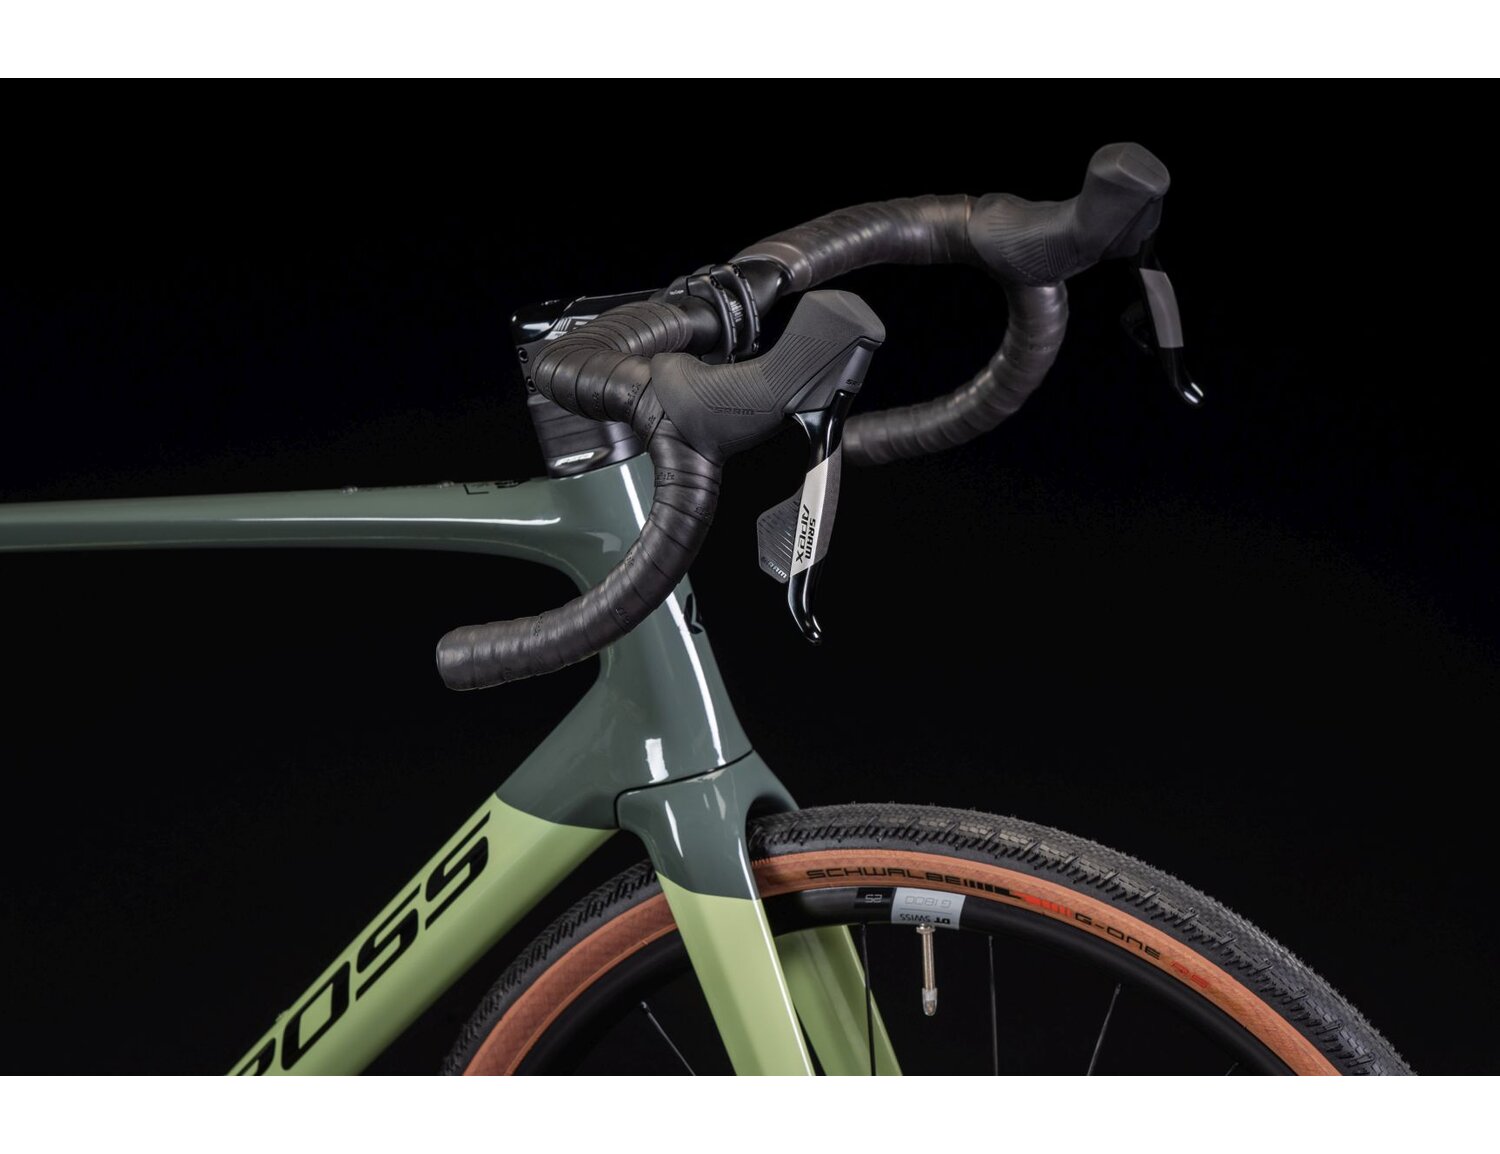  Carbonowa rama, sztywny carbonowy widelec, carbonowa kierownica oraz opony Schwalbe w rowerze gravelowym KROSS Esker RS 2.0